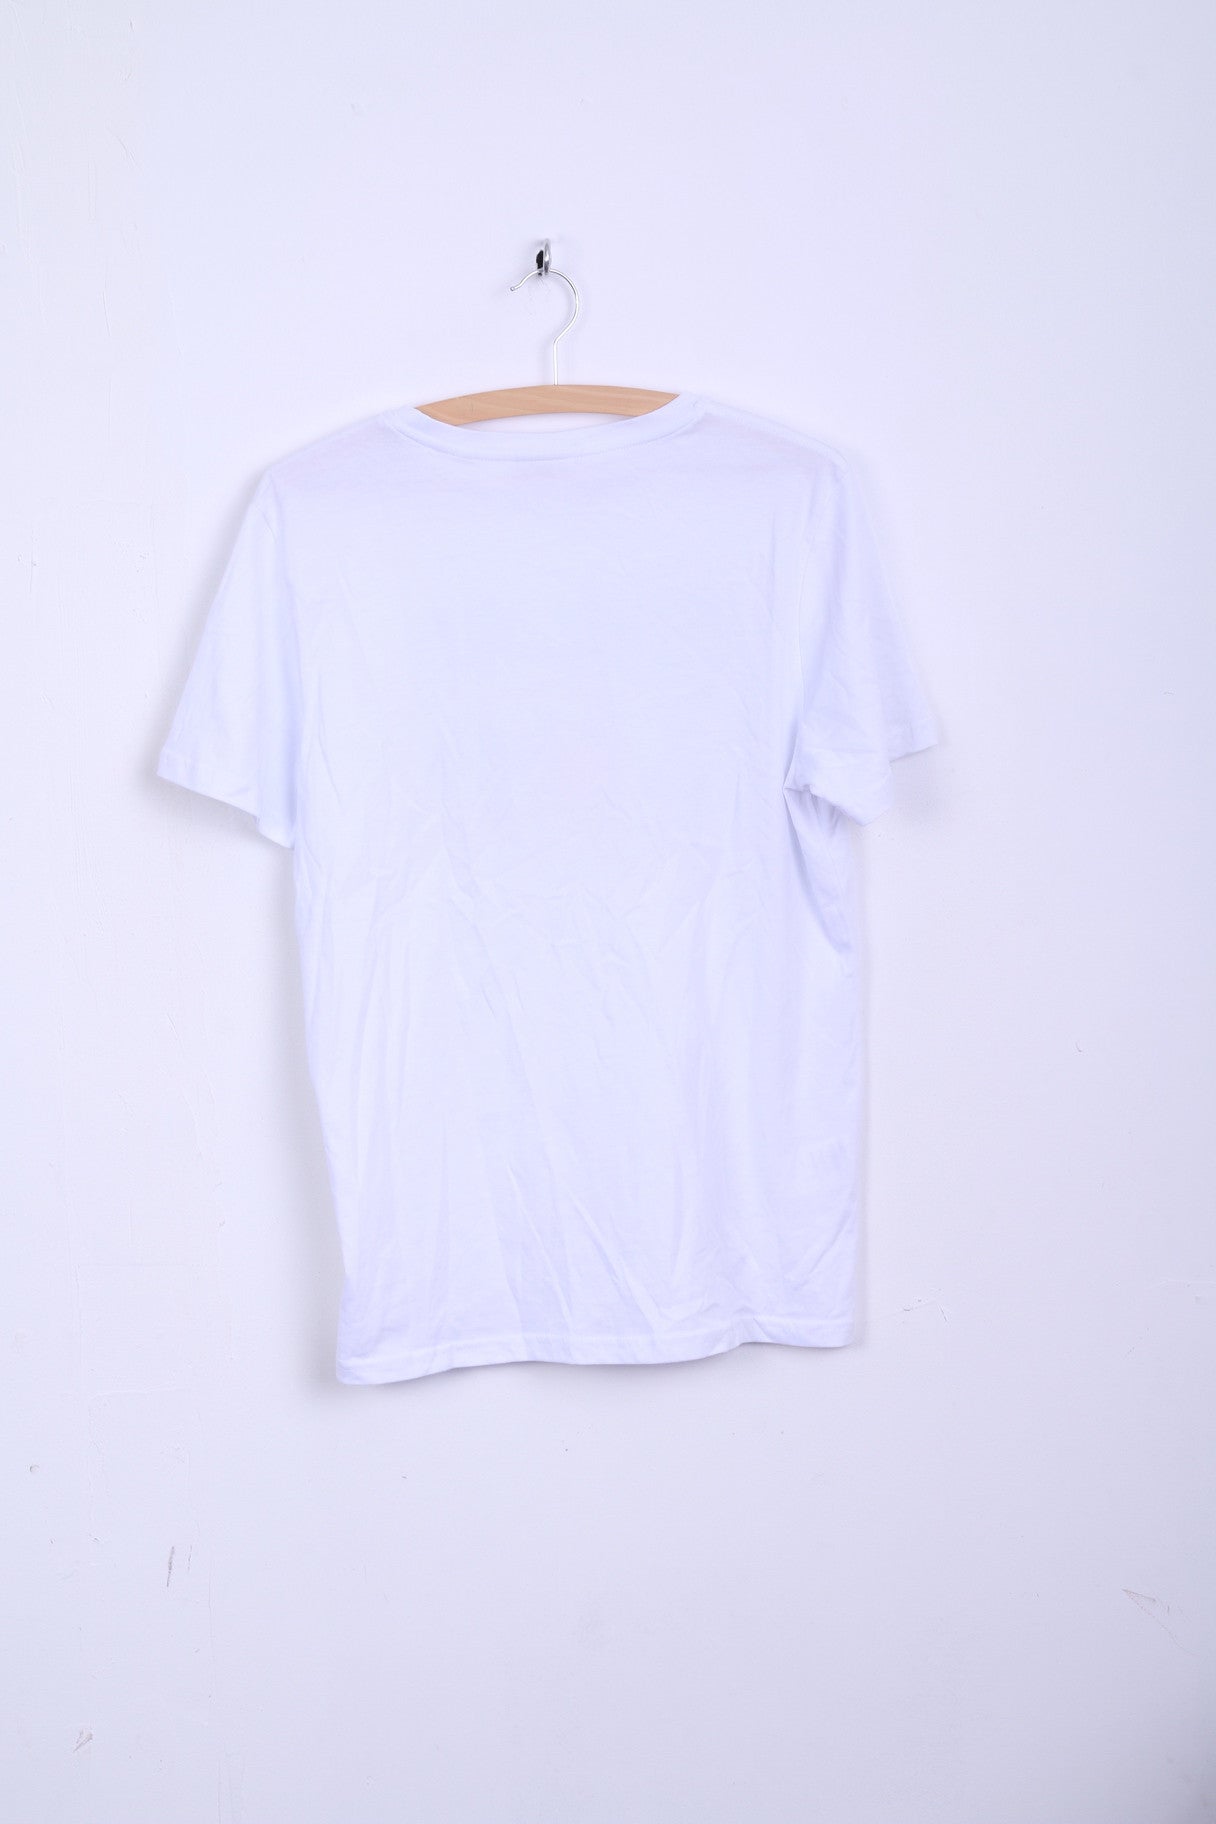 T-shirt ufficiale da uomo M, girocollo, bianca, Wanderers Fc